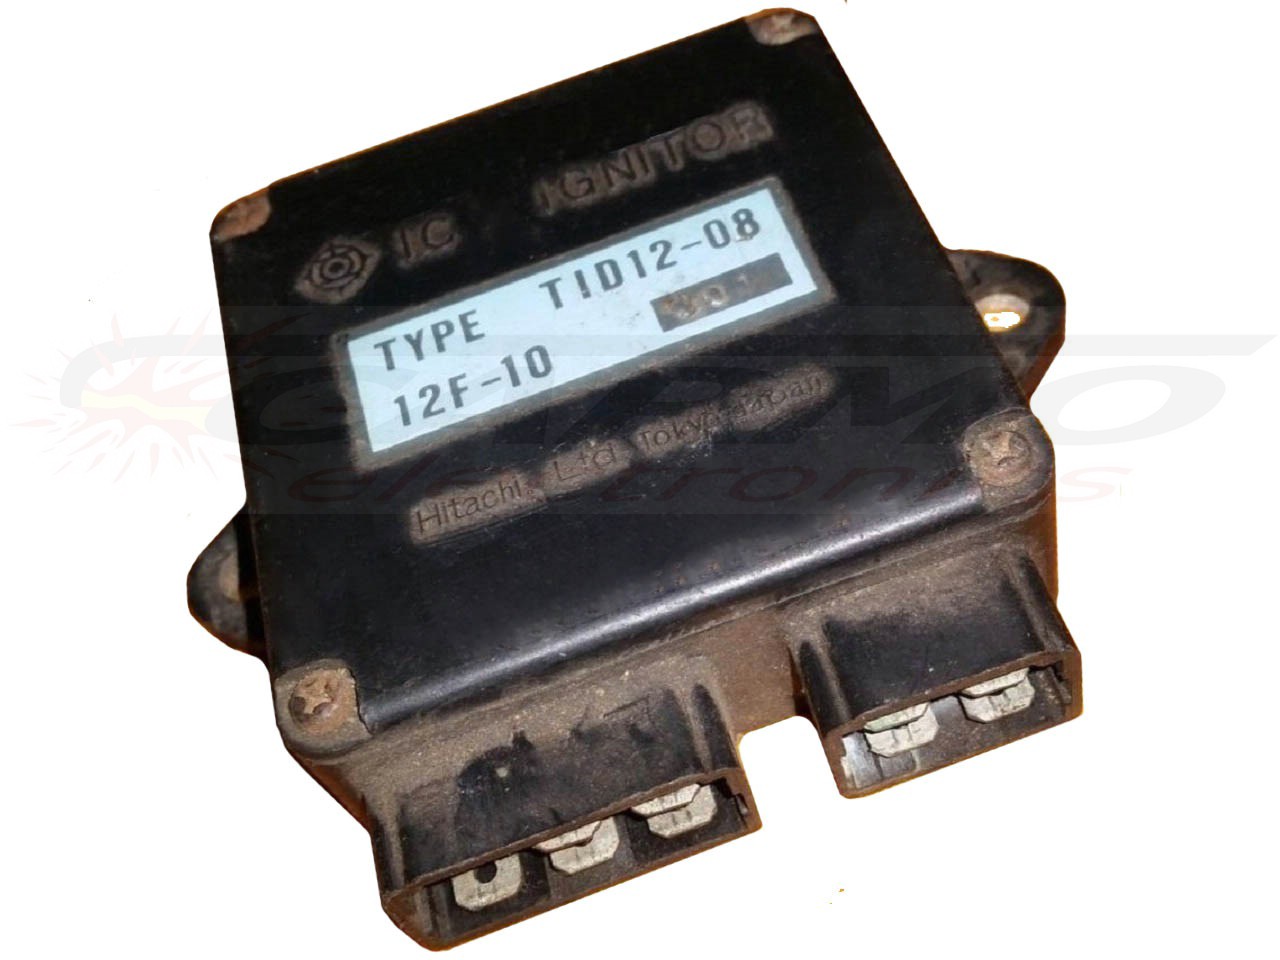 XS400 DOHC ignição módulo de ignição CDI Box (TID12-08, 12F-10)